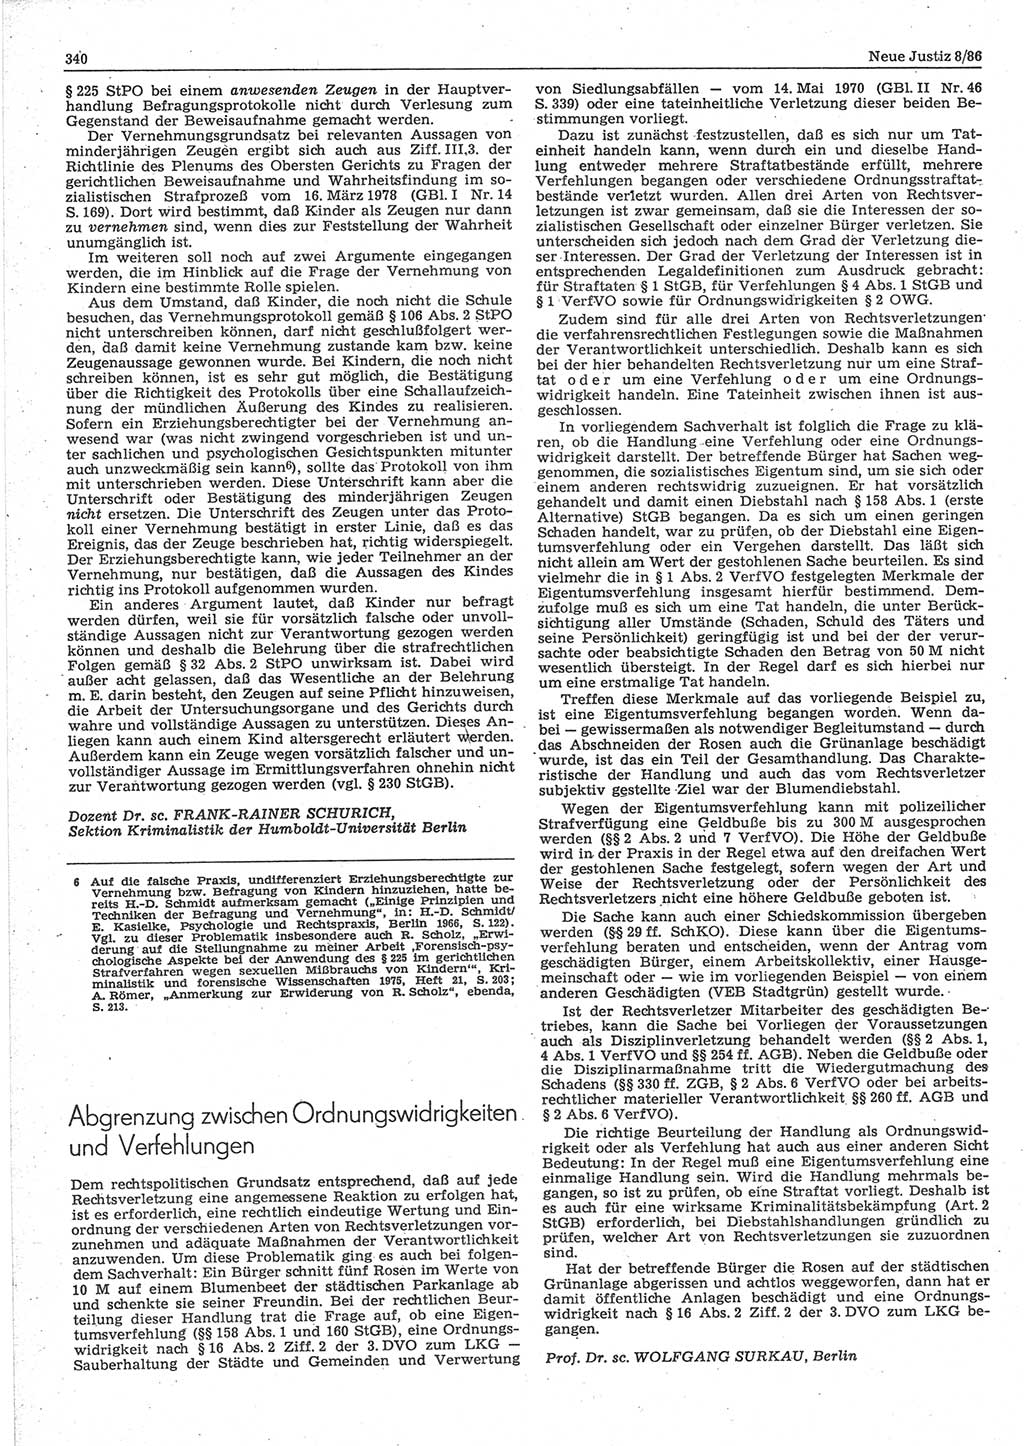 Neue Justiz (NJ), Zeitschrift für sozialistisches Recht und Gesetzlichkeit [Deutsche Demokratische Republik (DDR)], 40. Jahrgang 1986, Seite 340 (NJ DDR 1986, S. 340)